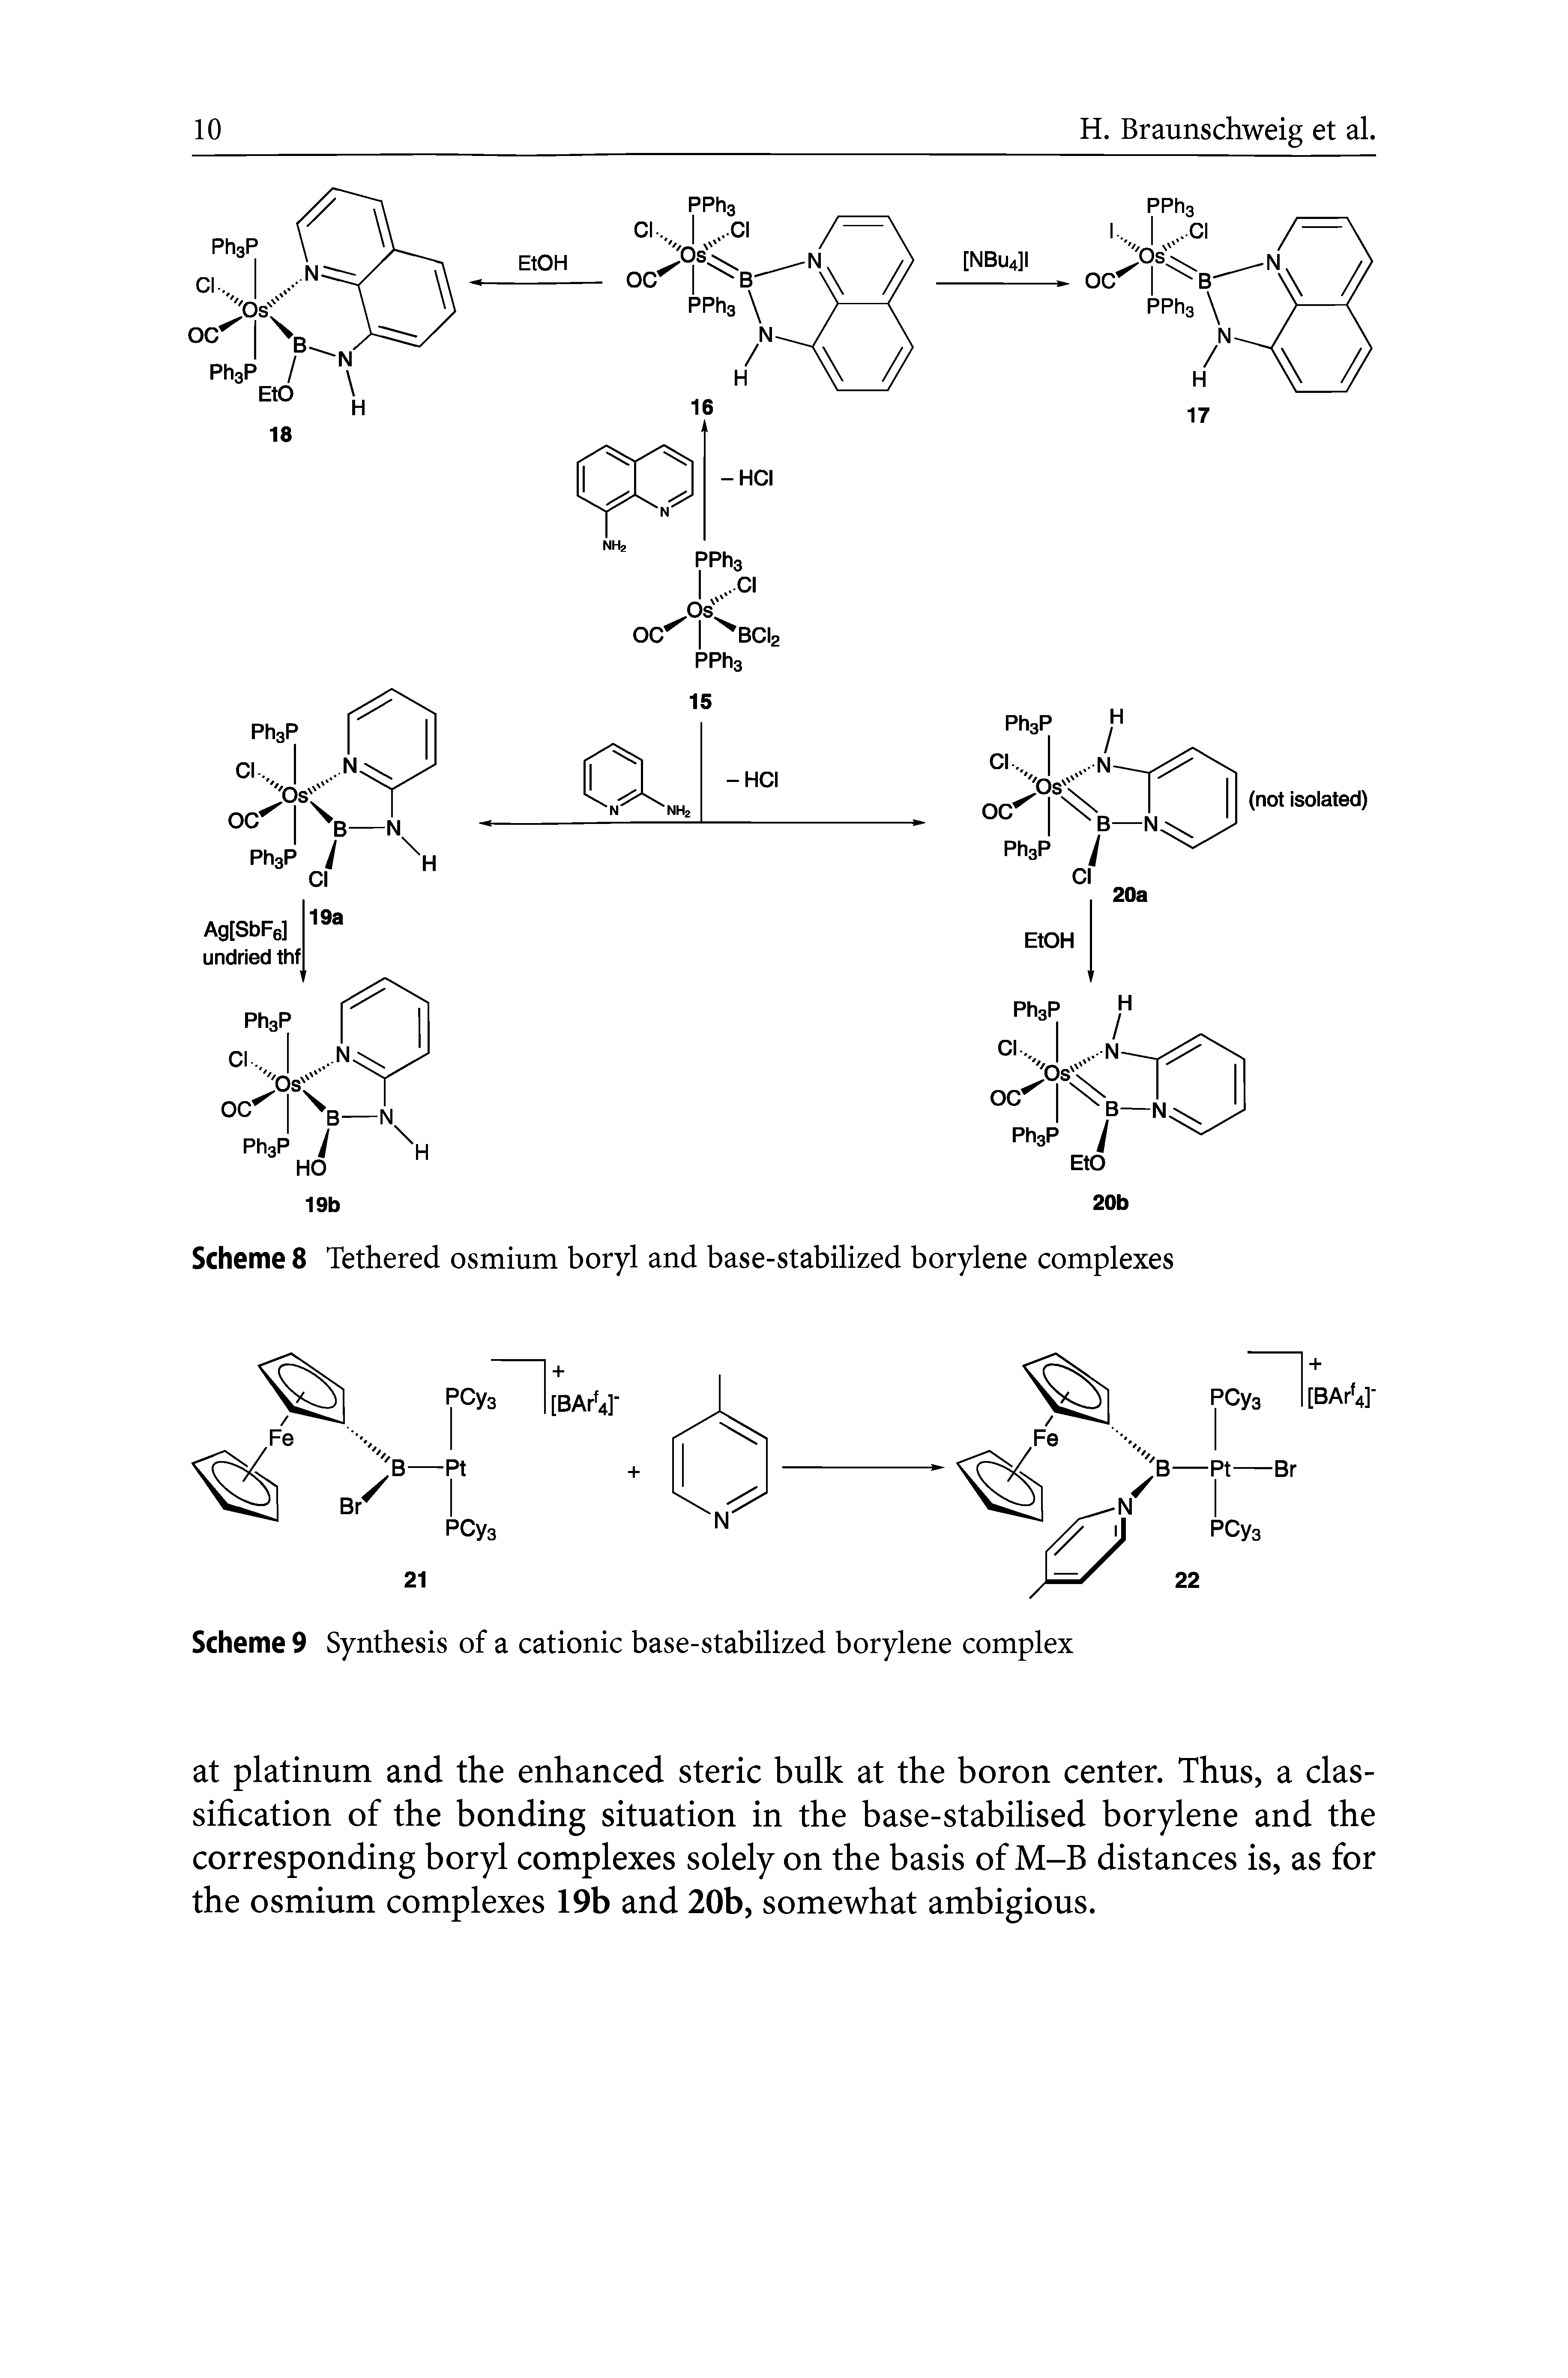 Scheme 8 Tethered osmium boryl and base-stabilized borylene complexes...